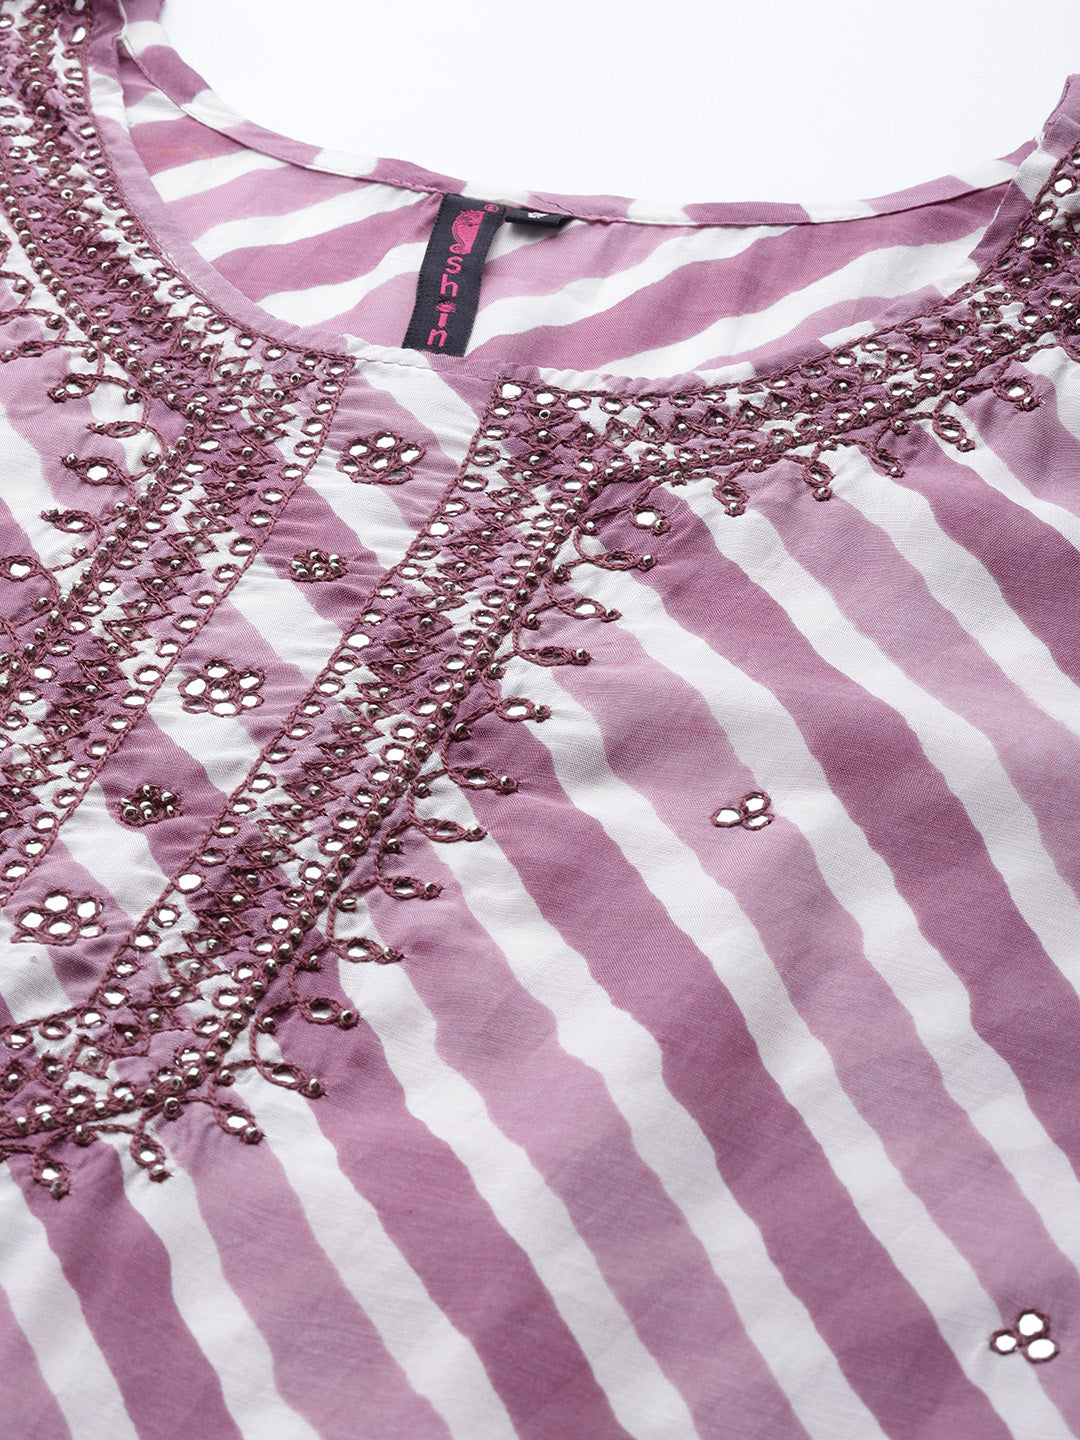 Women's Art Silk Purple Embroidered A-Line Kurta Trouser Dupatta Set - Navyaa